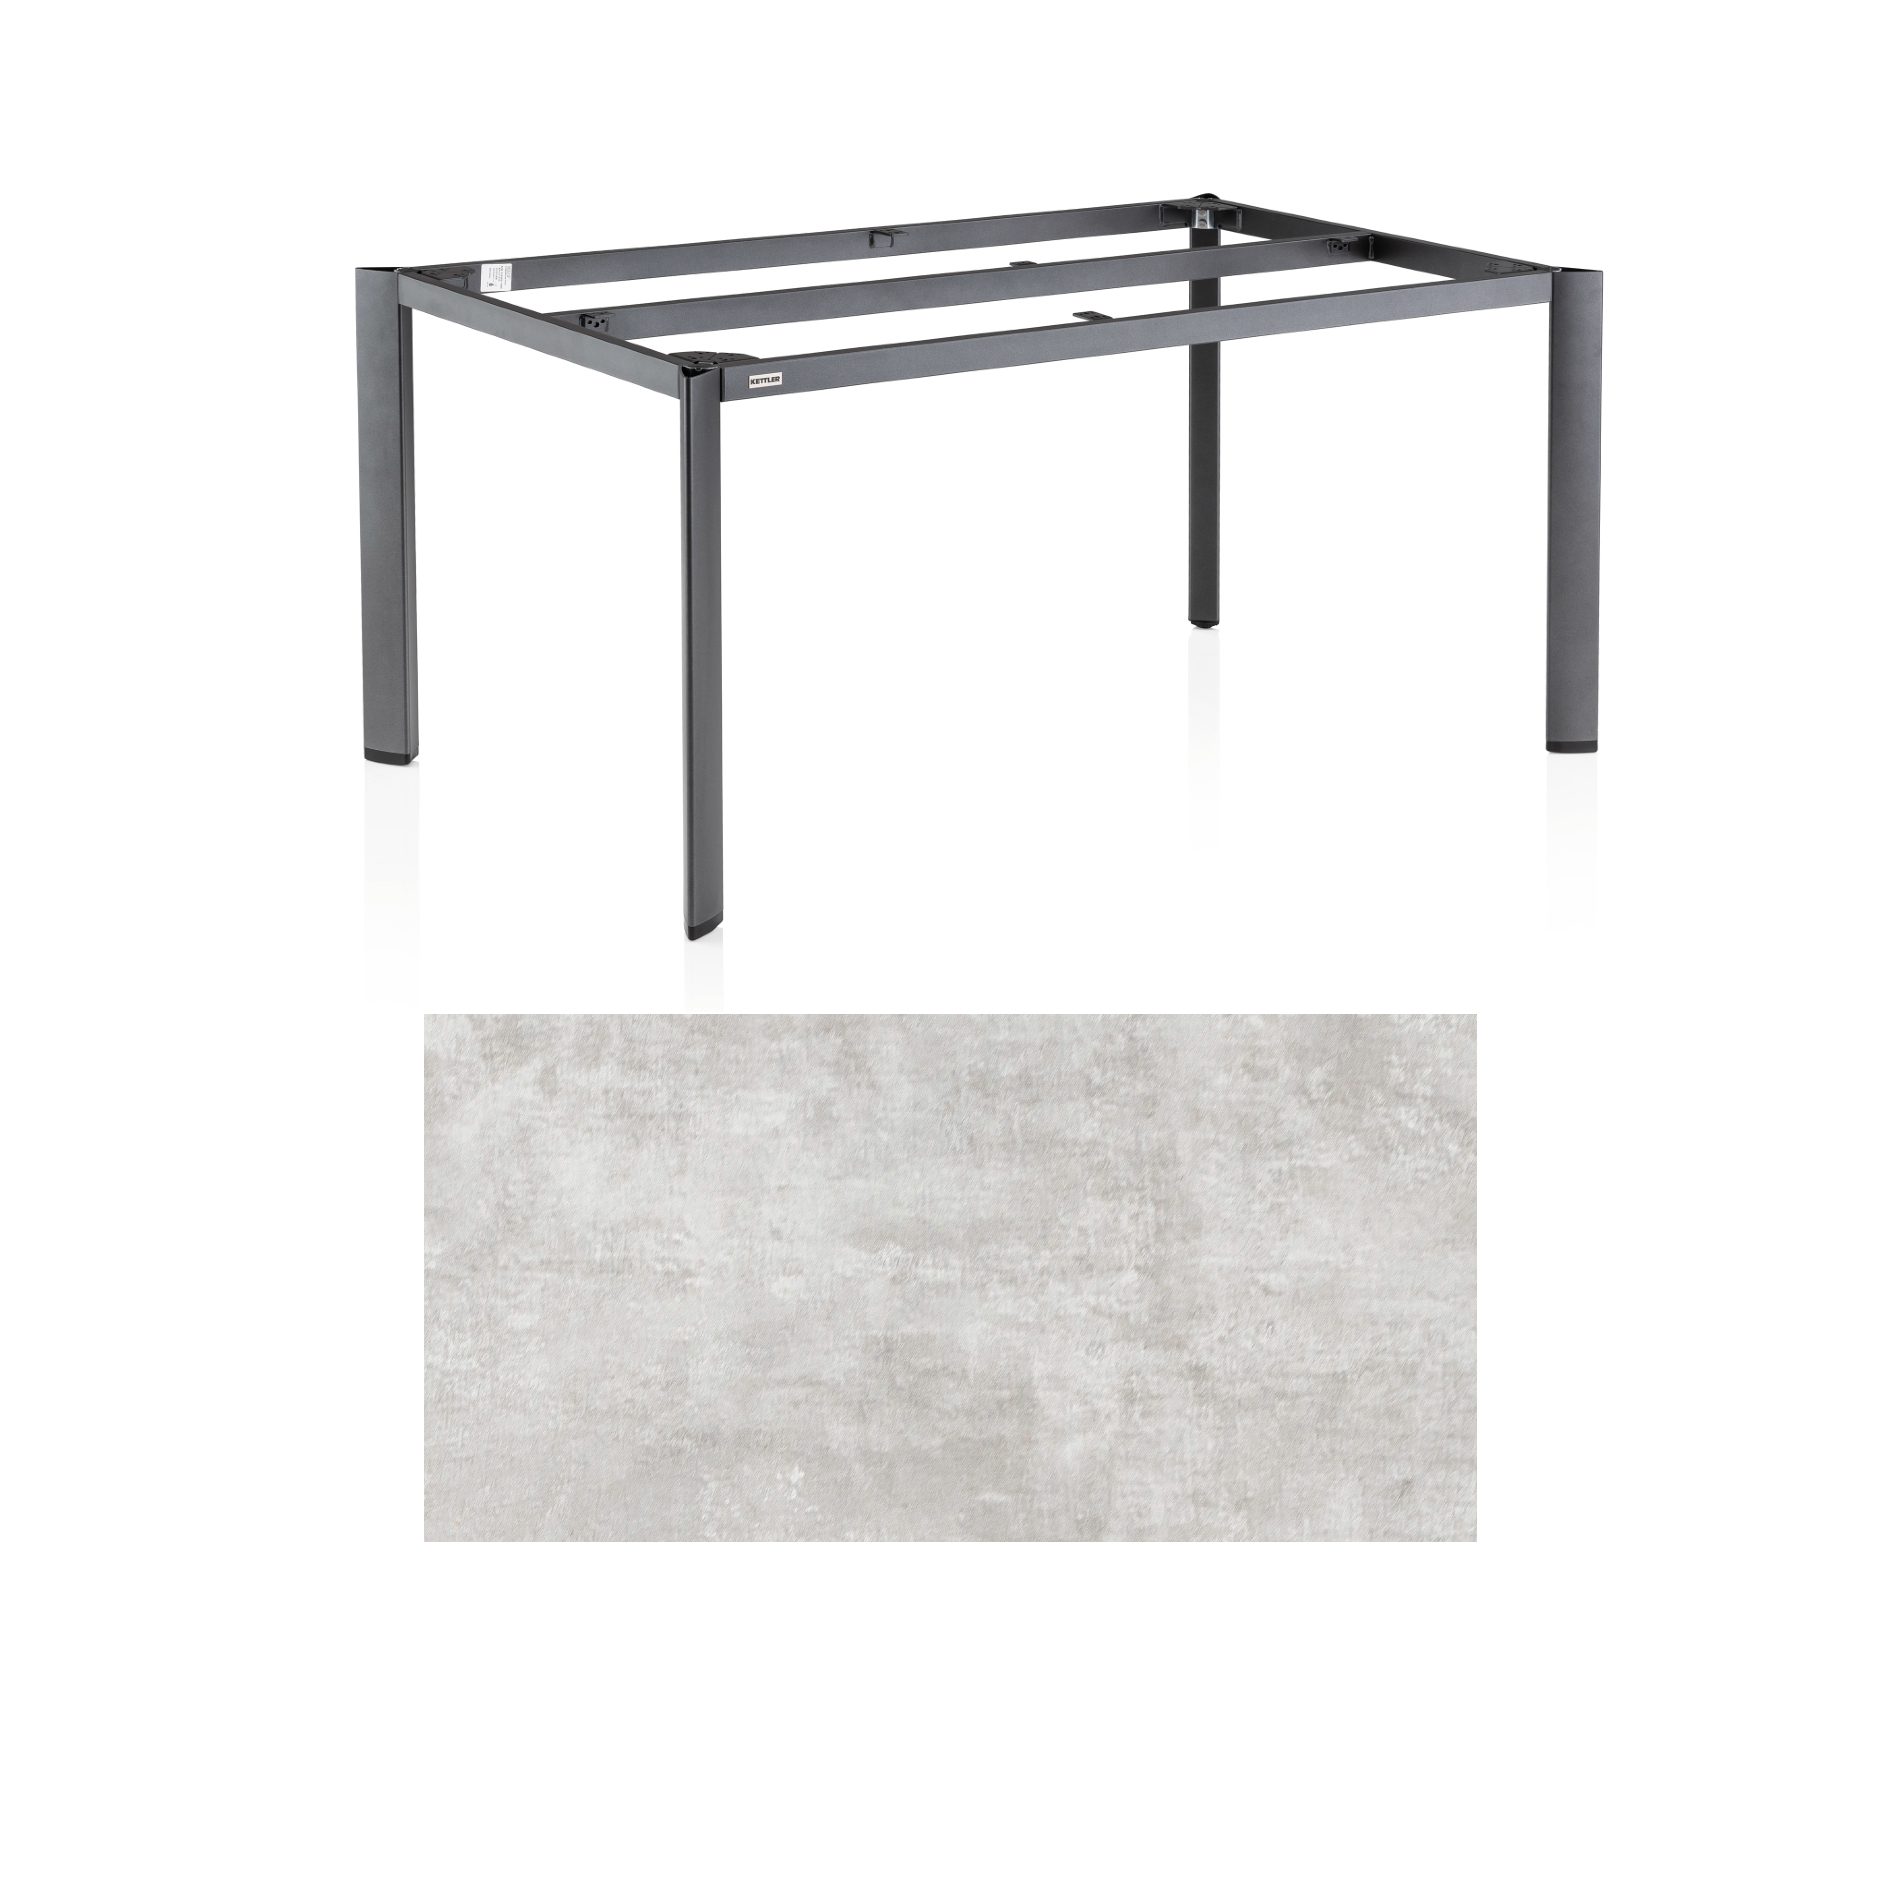 Kettler "Edge" Gartentisch, Gestell Aluminium anthrazit, Tischplatte HPL hellgrau meliert, 180x95 cm